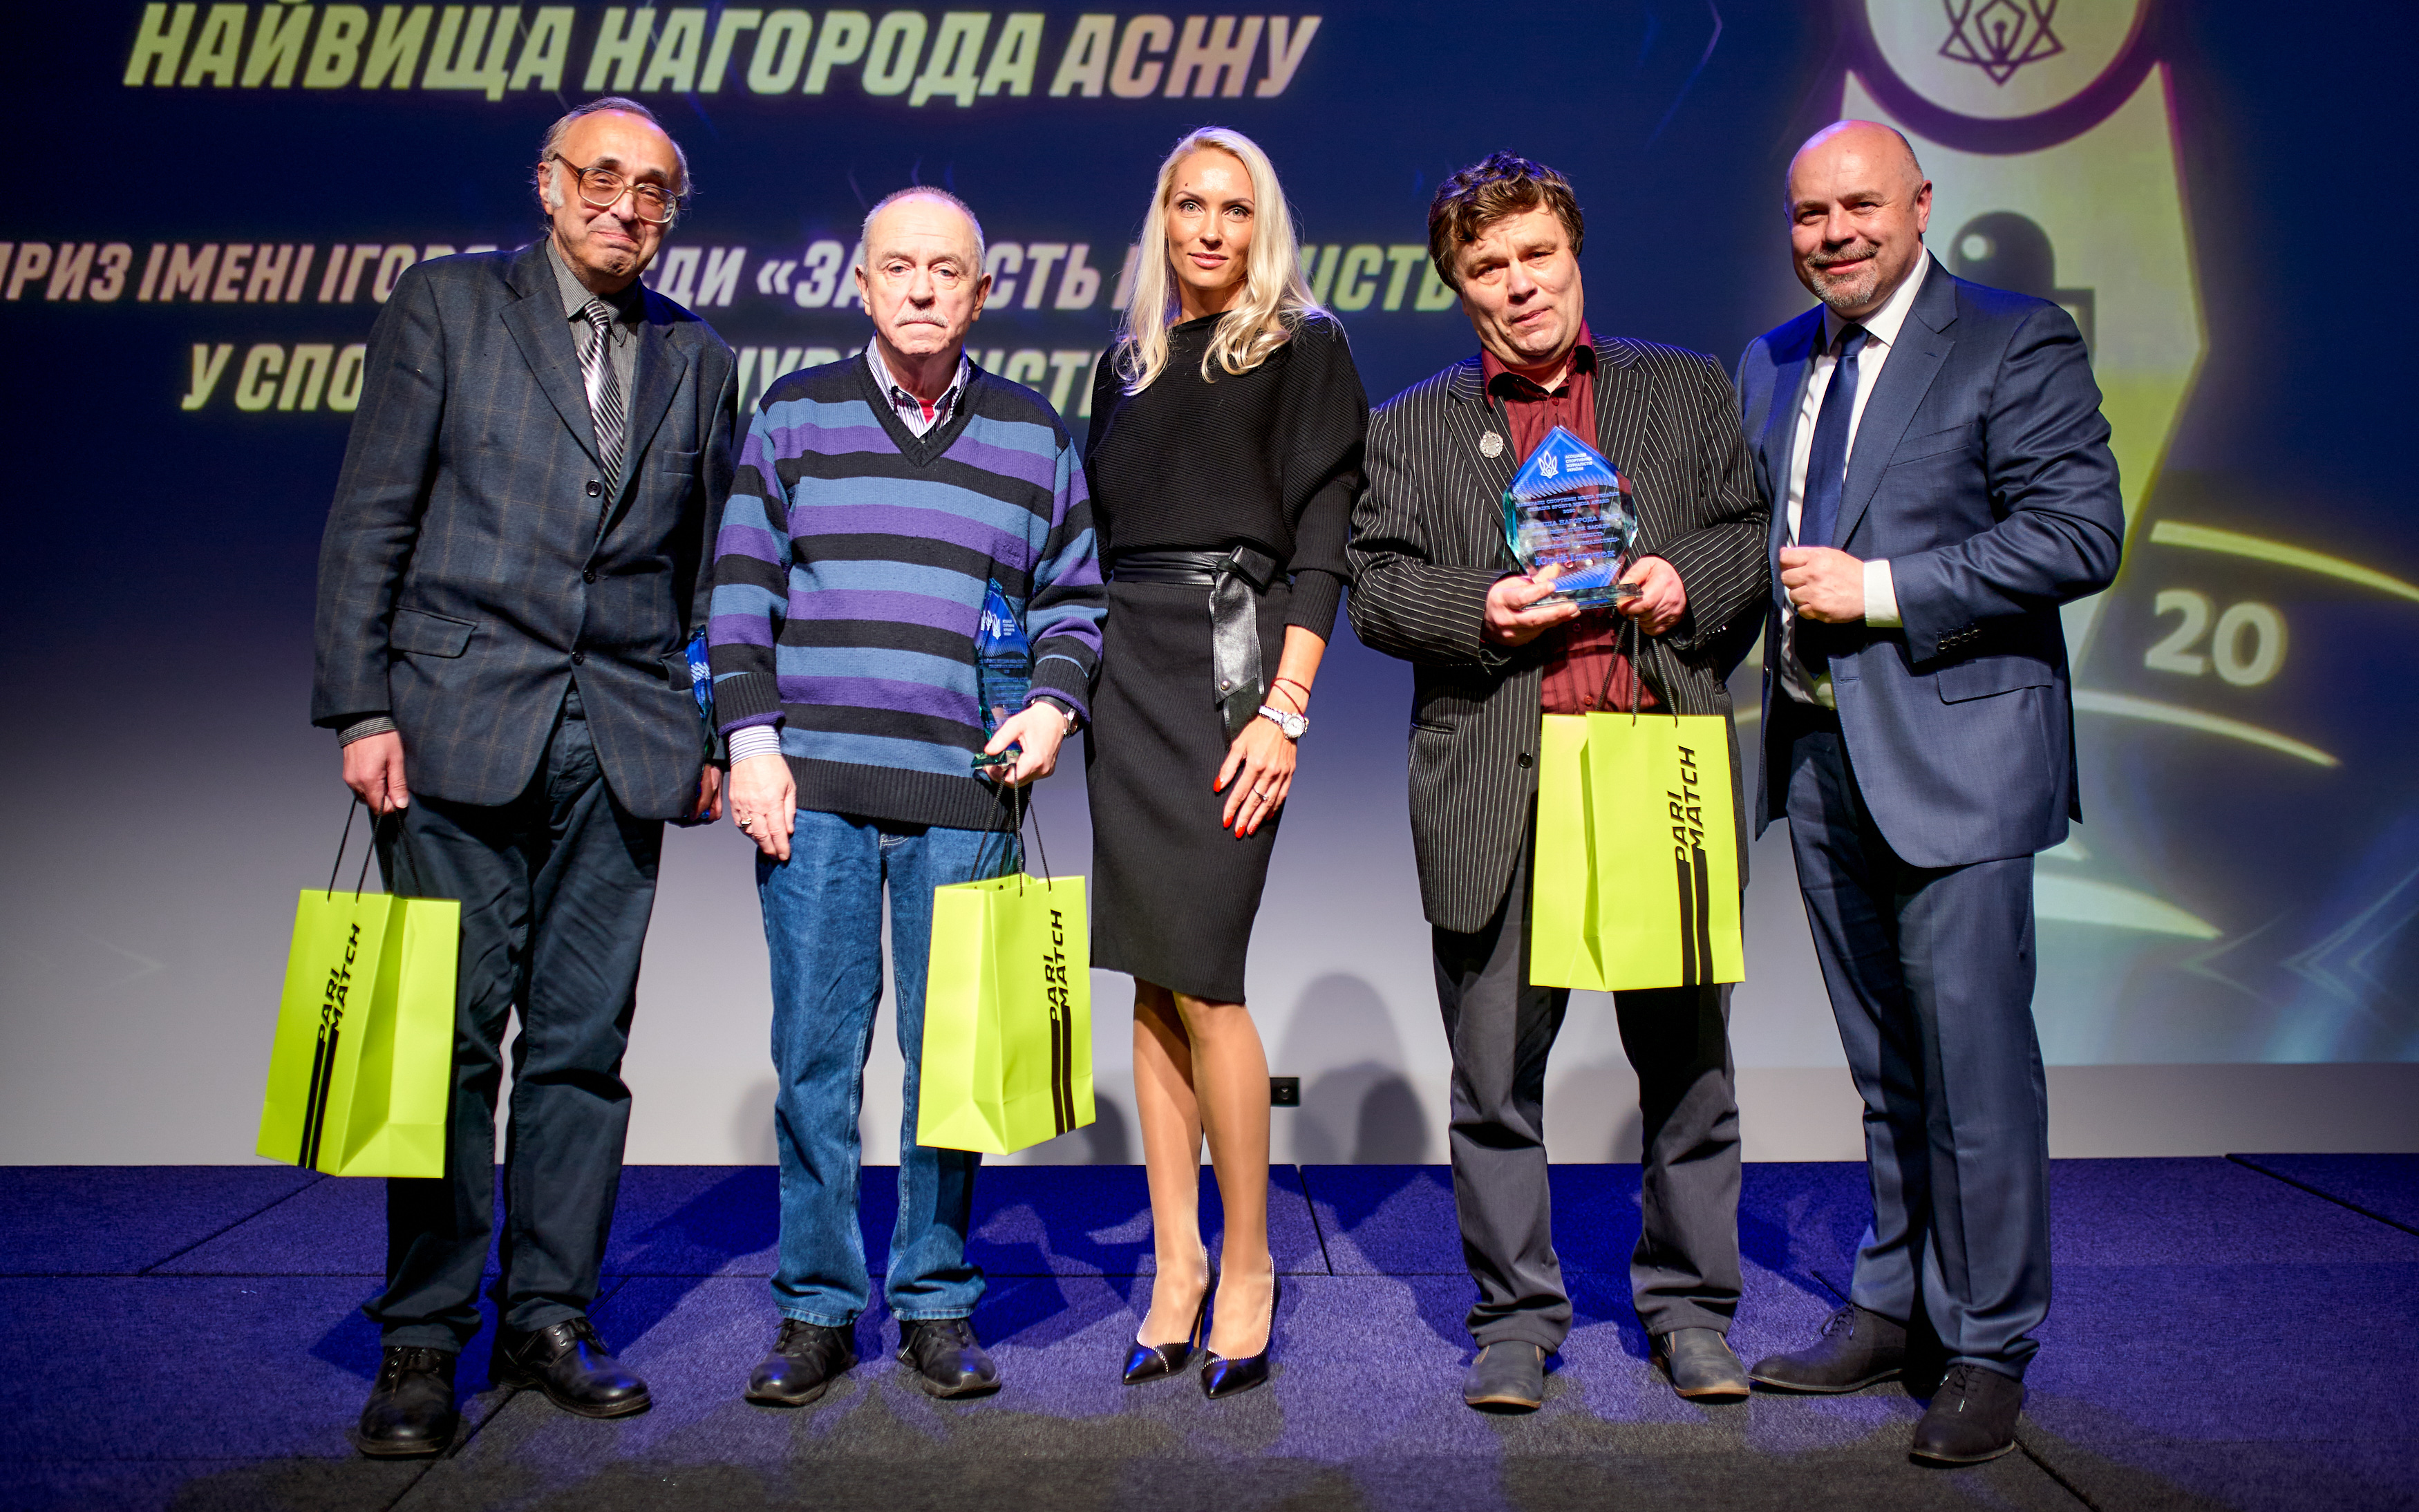 АСЖУ нагородила найкращі спортивні медіа України 2020